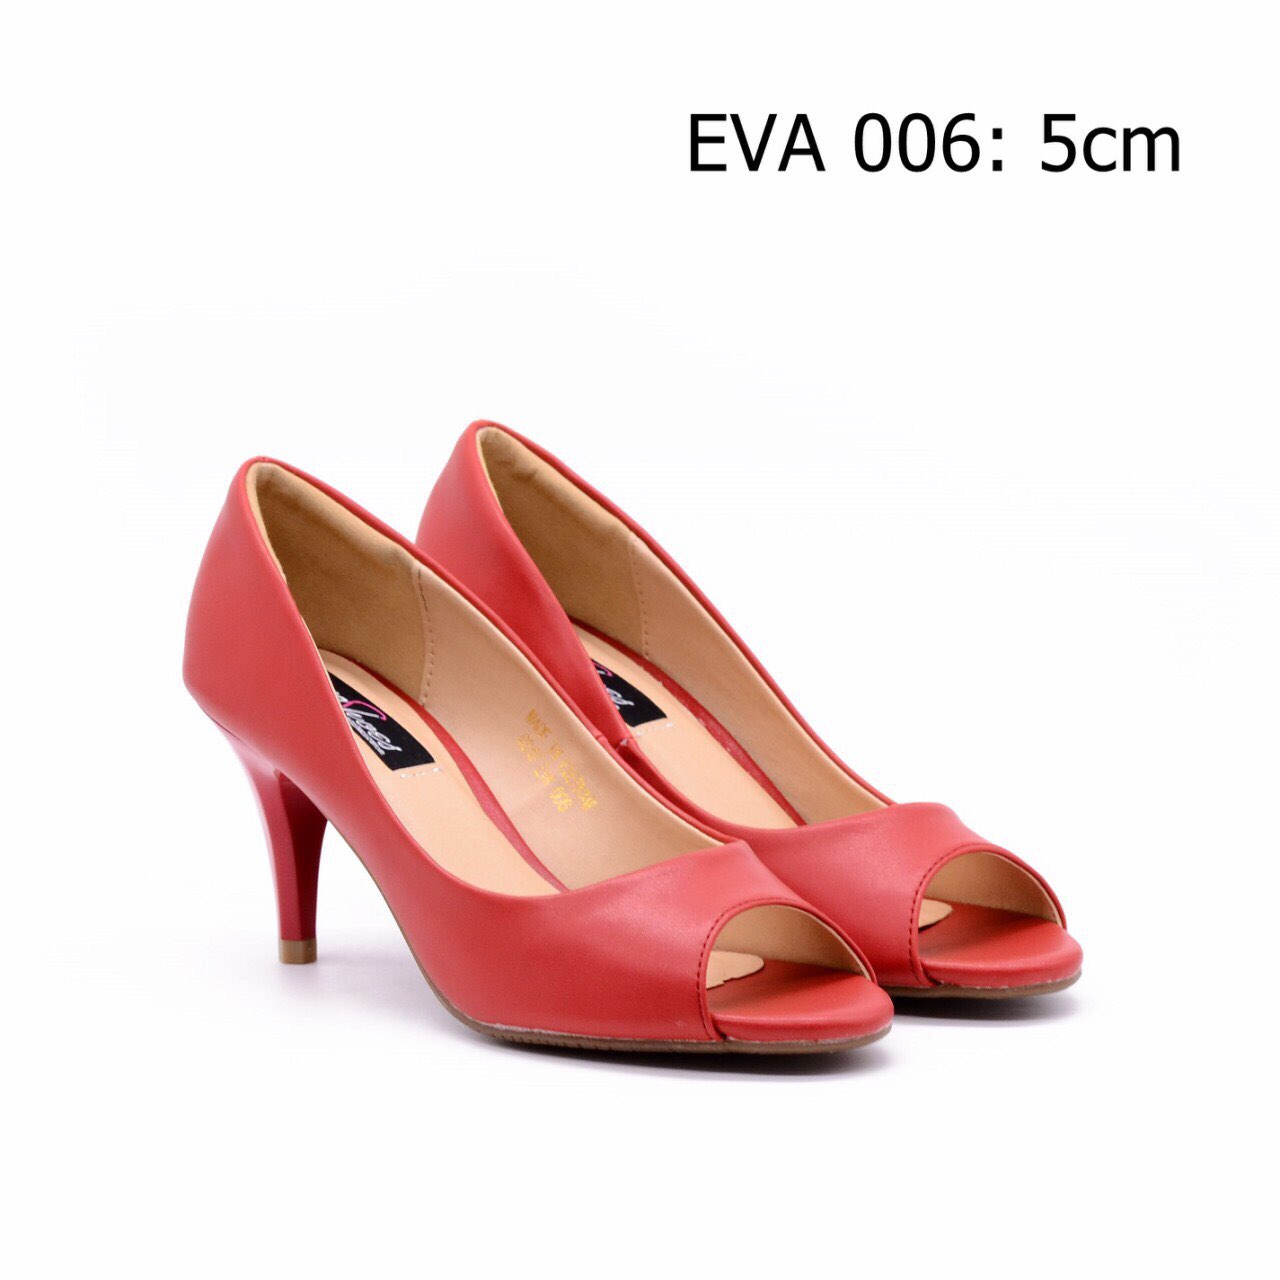 Giày hở mũi EVA006 cao 5cm